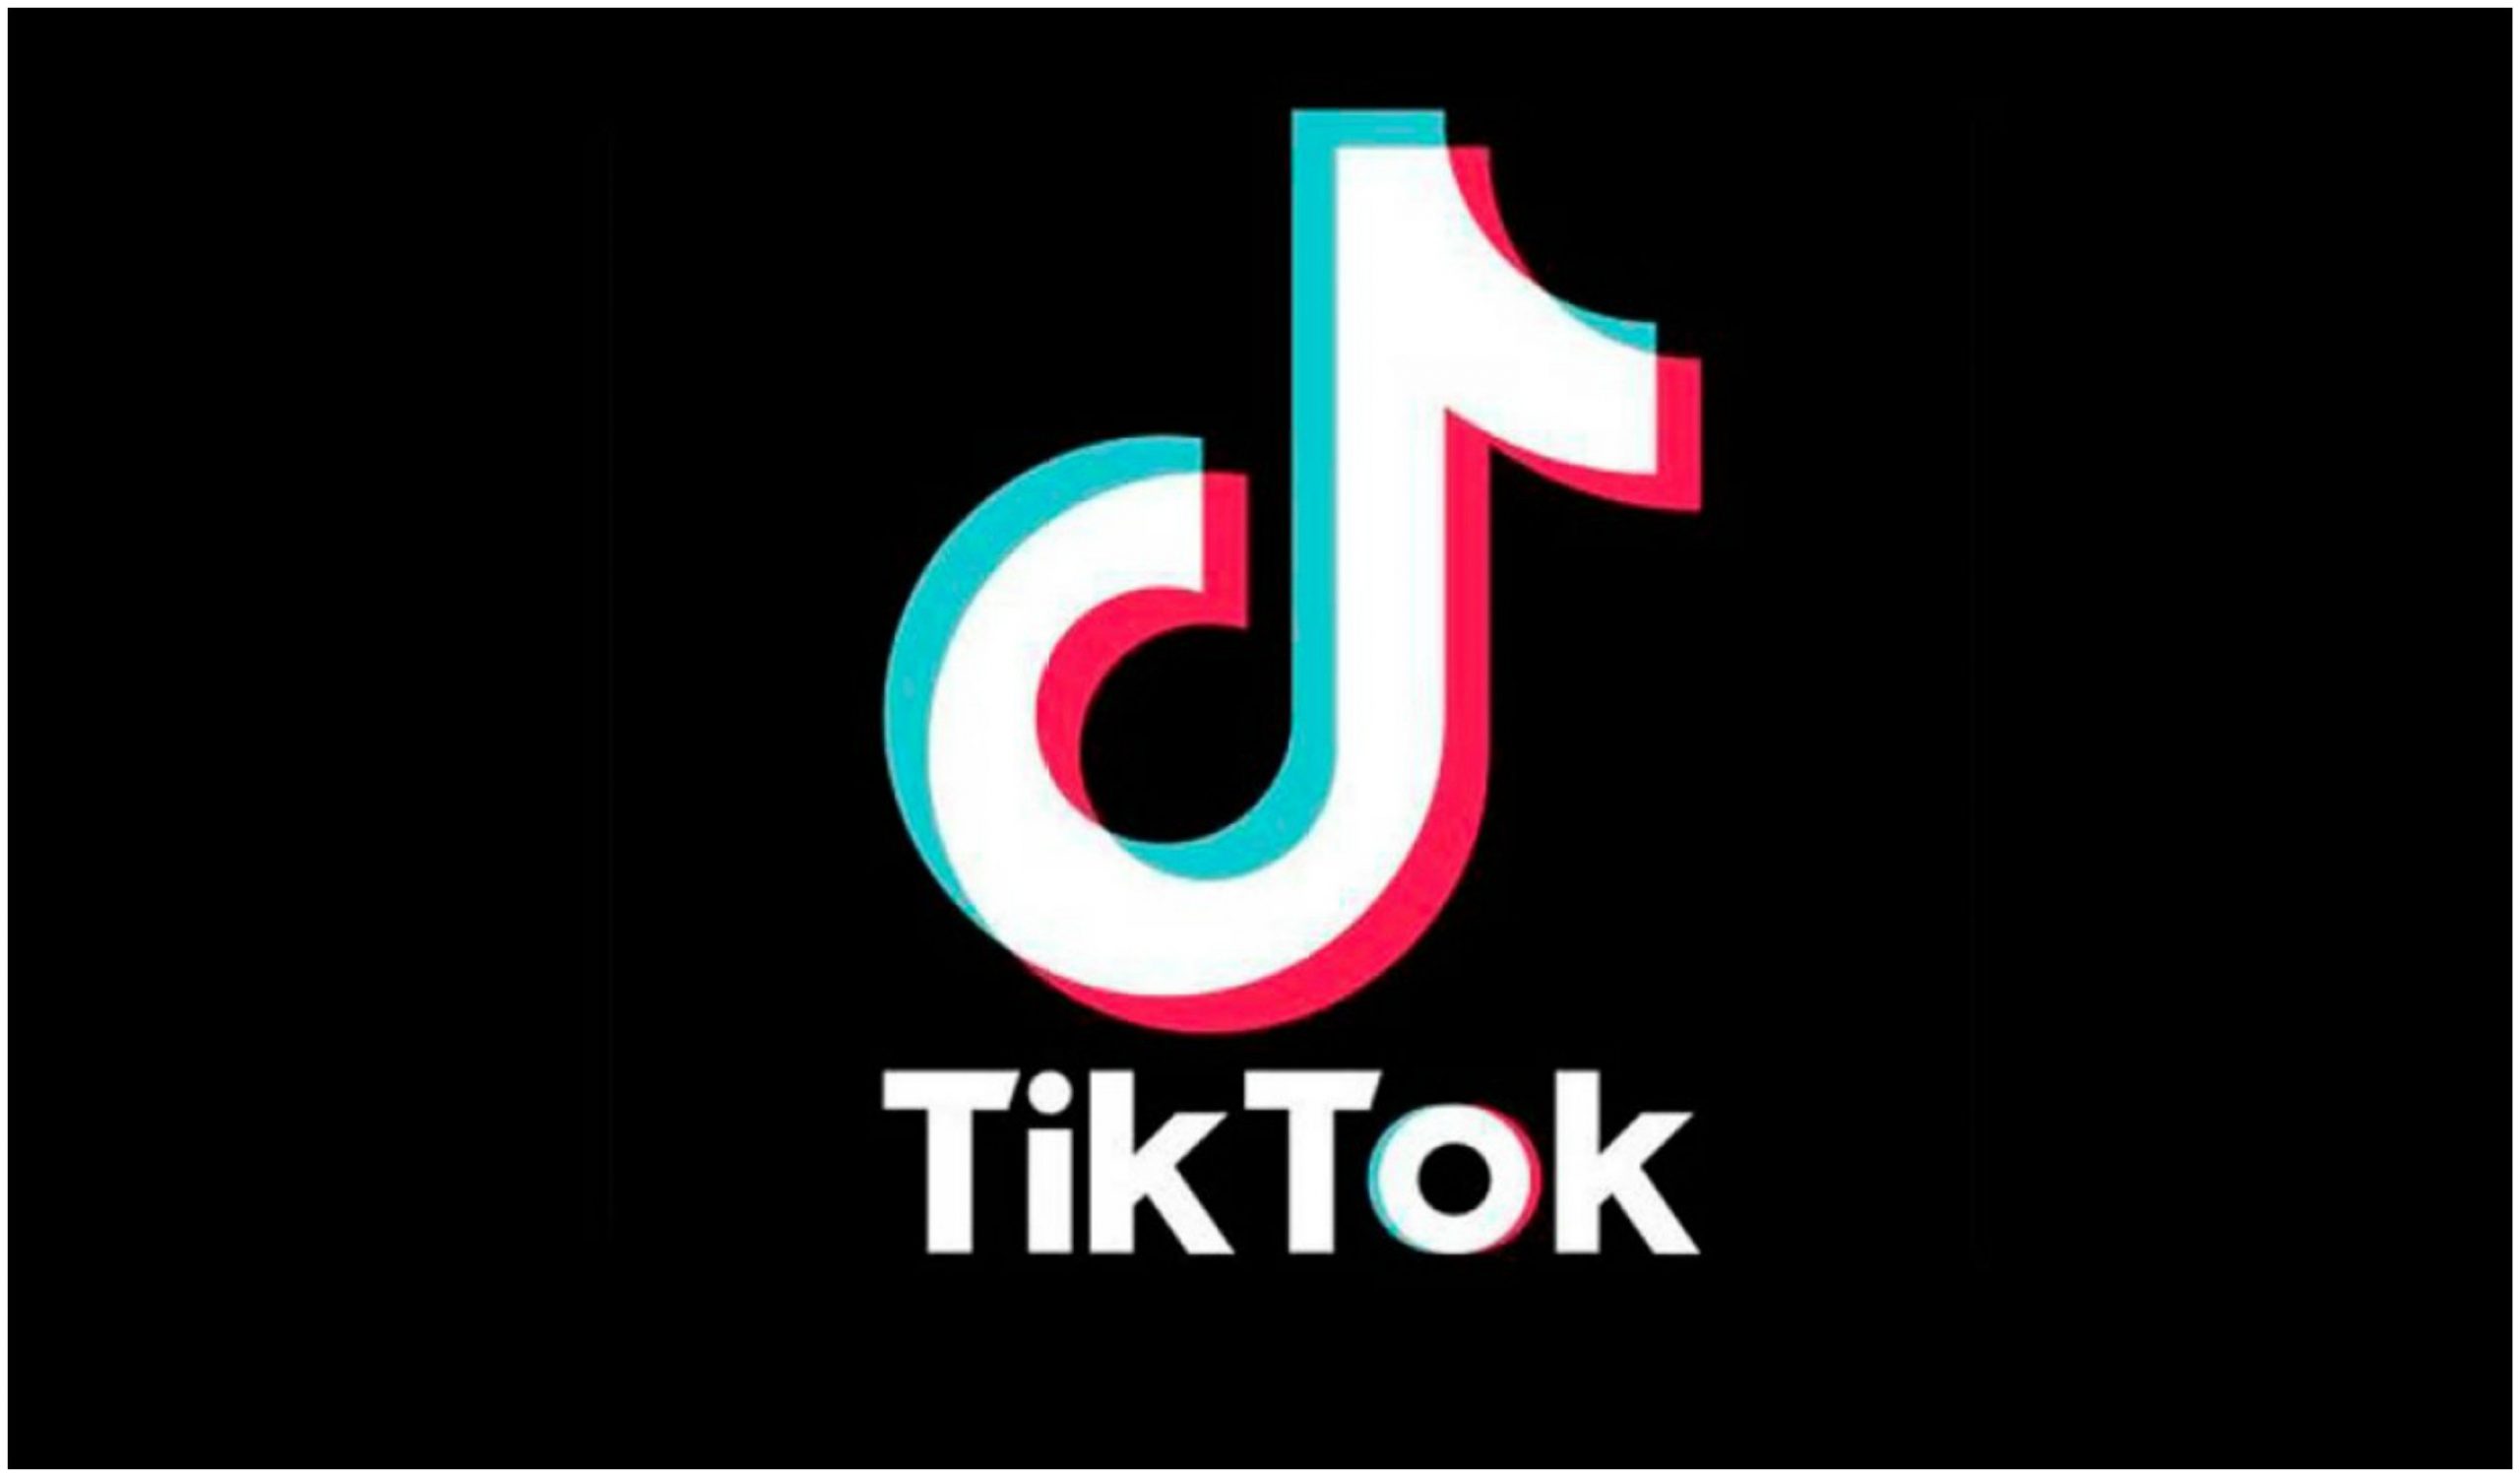 TikTok agregará subtítulos a los videos de manera automática